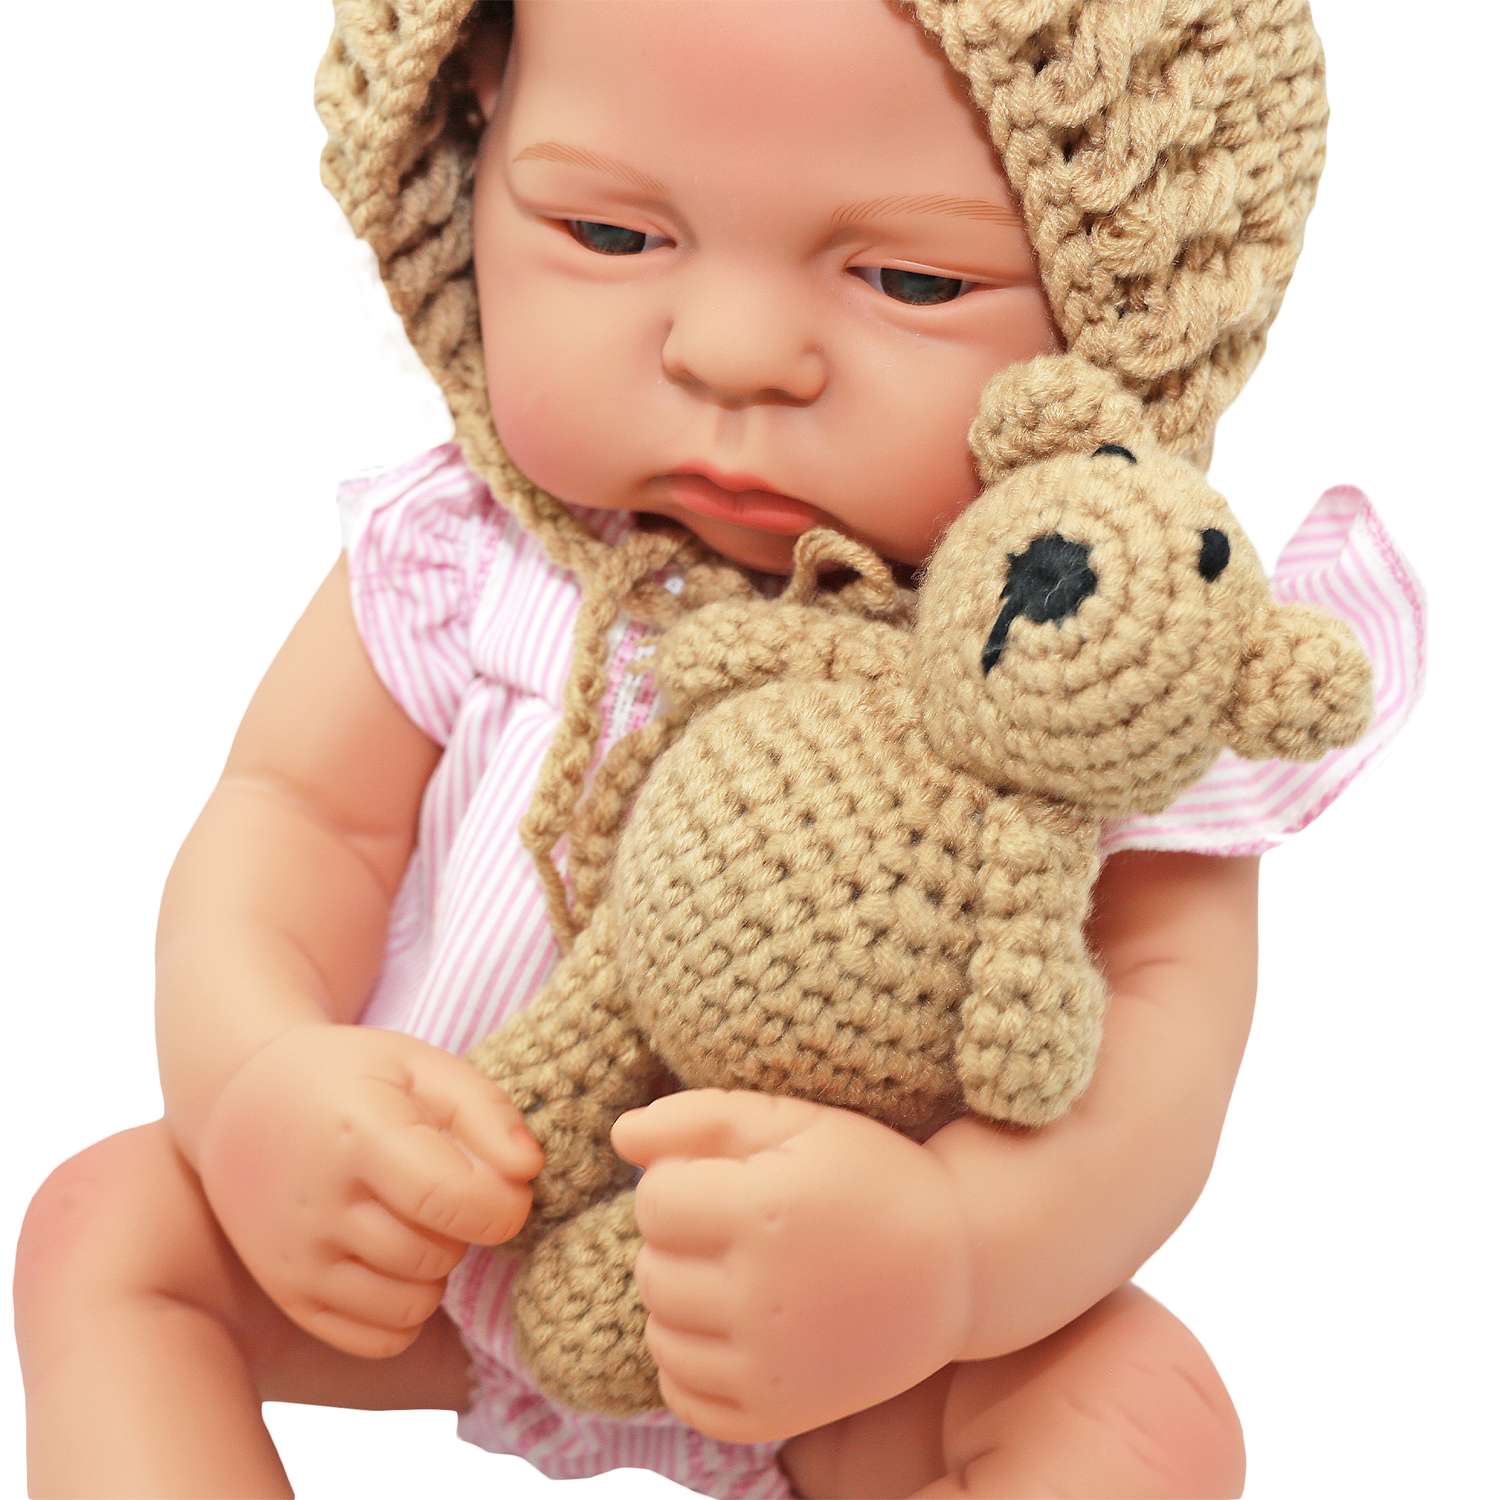 Набор для фотосессии ребенка SHARKTOYS от 0 до 3 месяцев мягкая игрушка мишка и шапочка 3570001 - фото 6